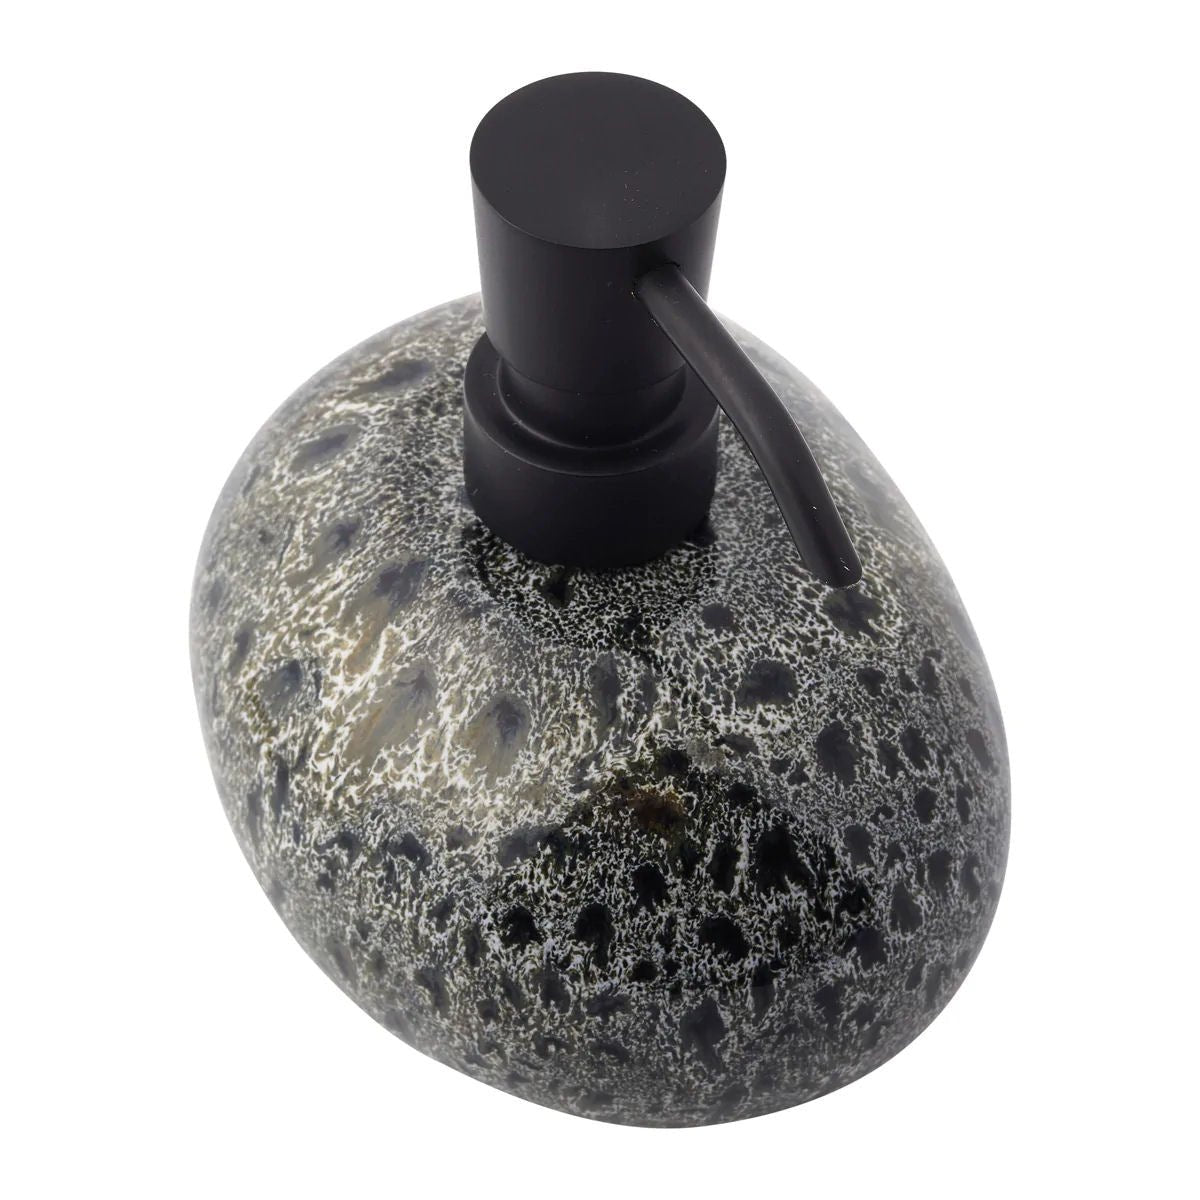 Black Olive Design Liquid Soap Dispenser - |VESIMI Design| Luxury and Rustic bathrooms online